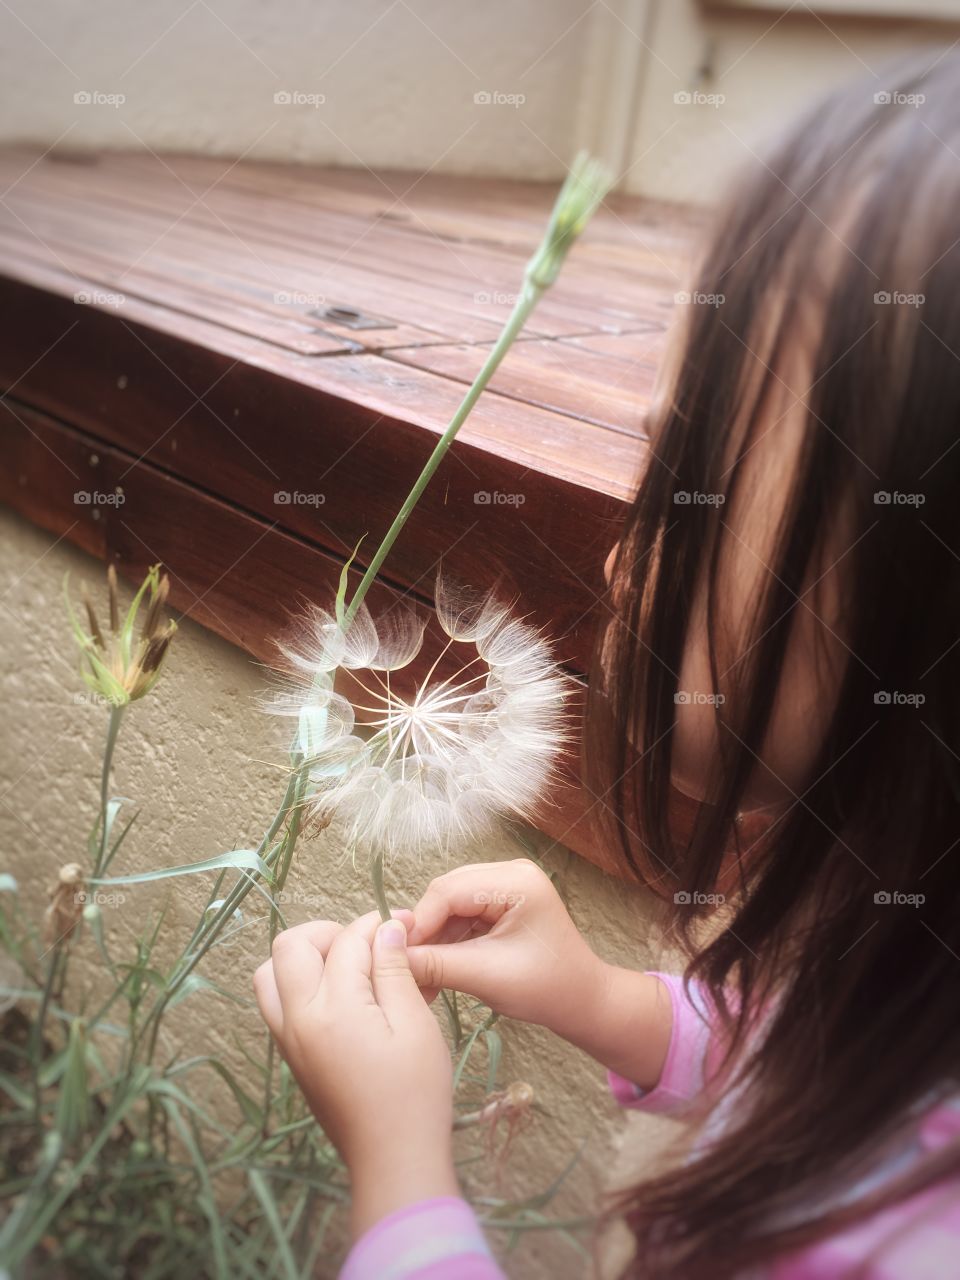 Girl blowing flower seeds like a dandelion 